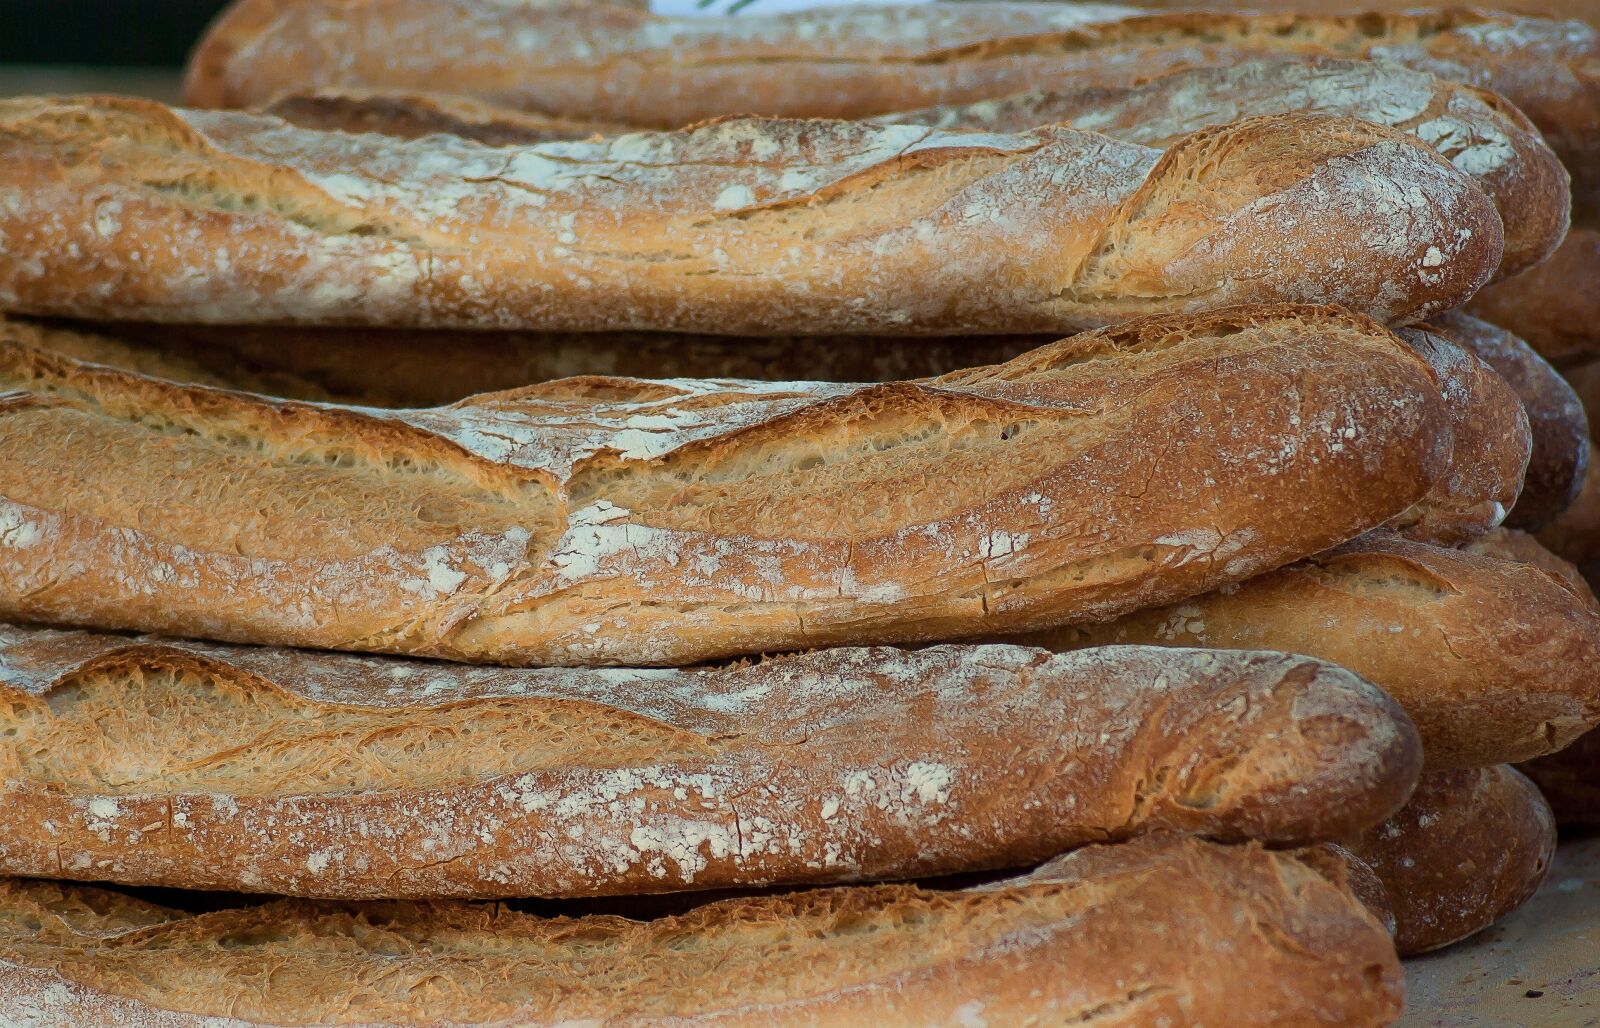 Pentax K10D sample photo. "Breads, chopsticks, flour" photography